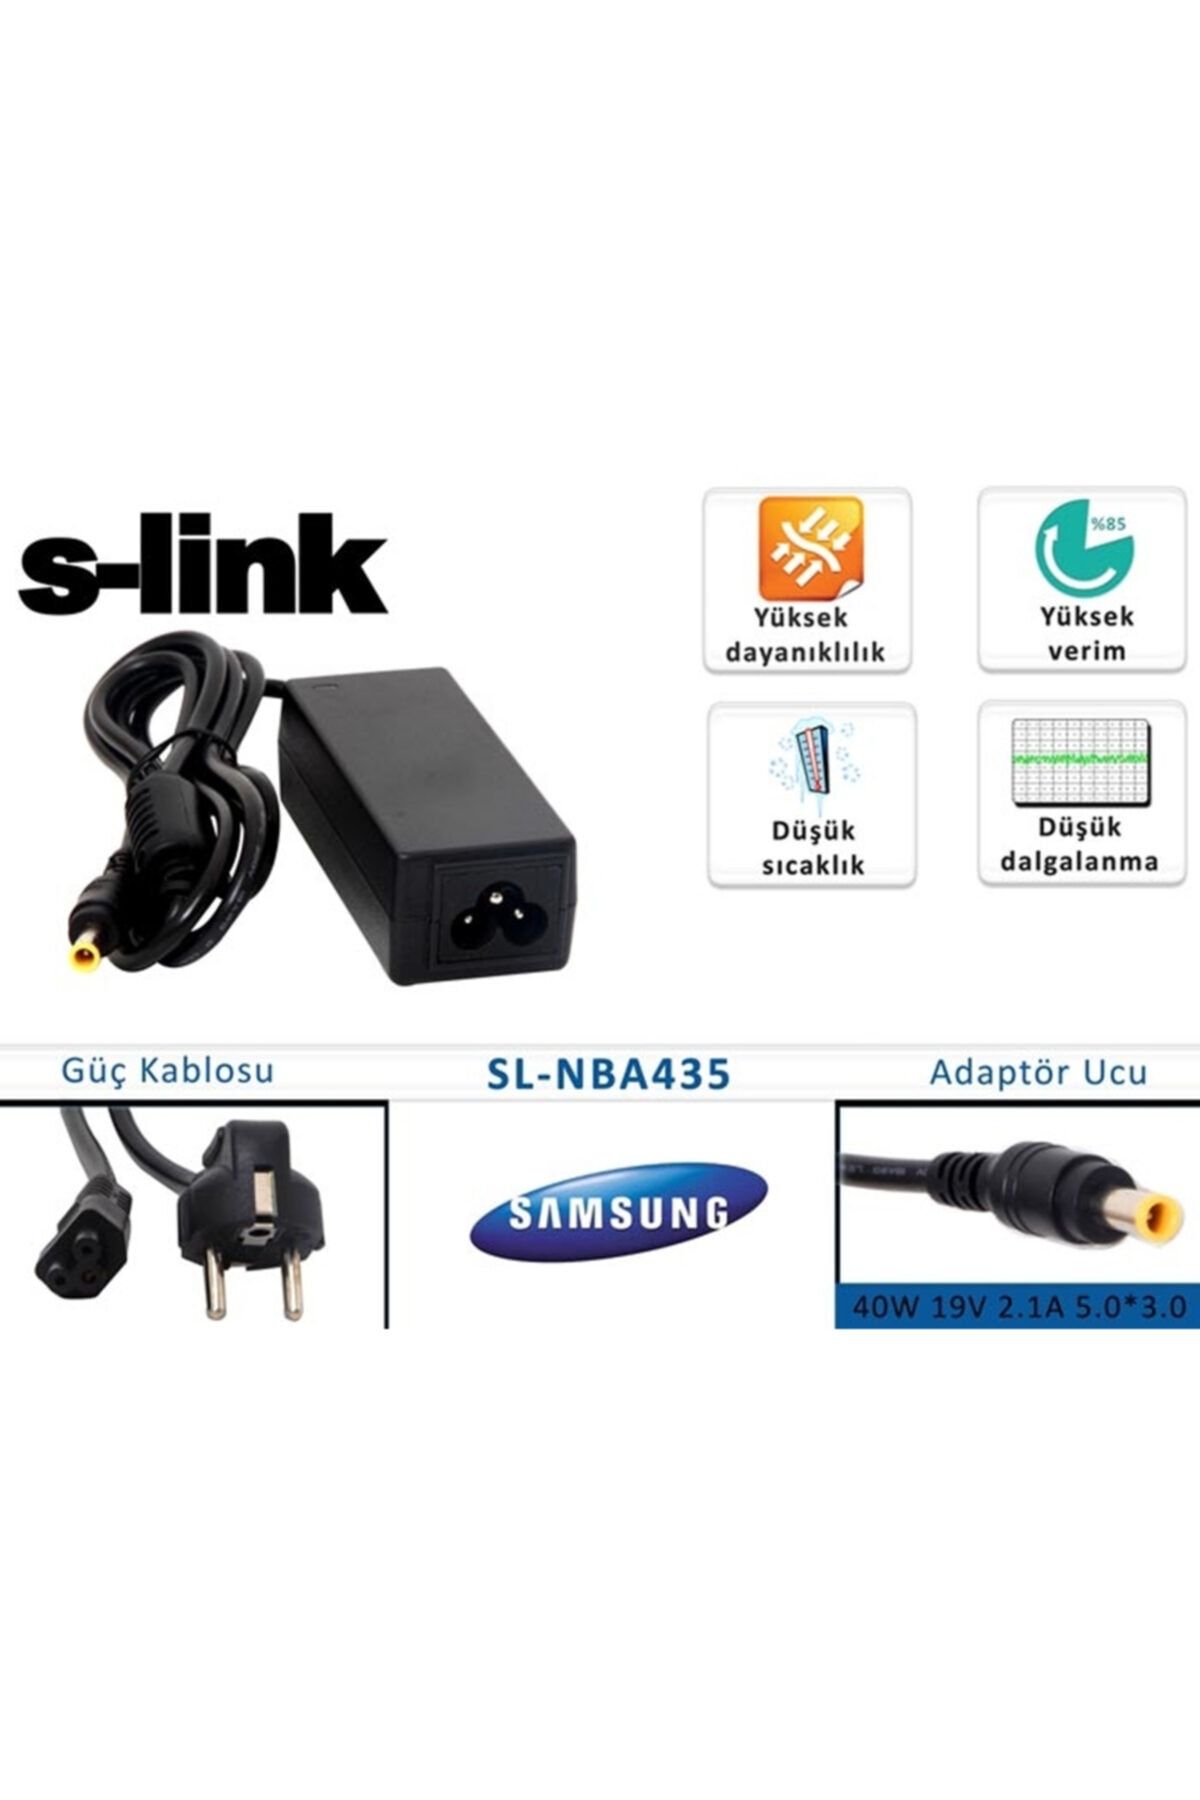 S-Link Sl-nba435 40w 19v 2.1a 5.0-3.0 Samsung Notebook Standart A